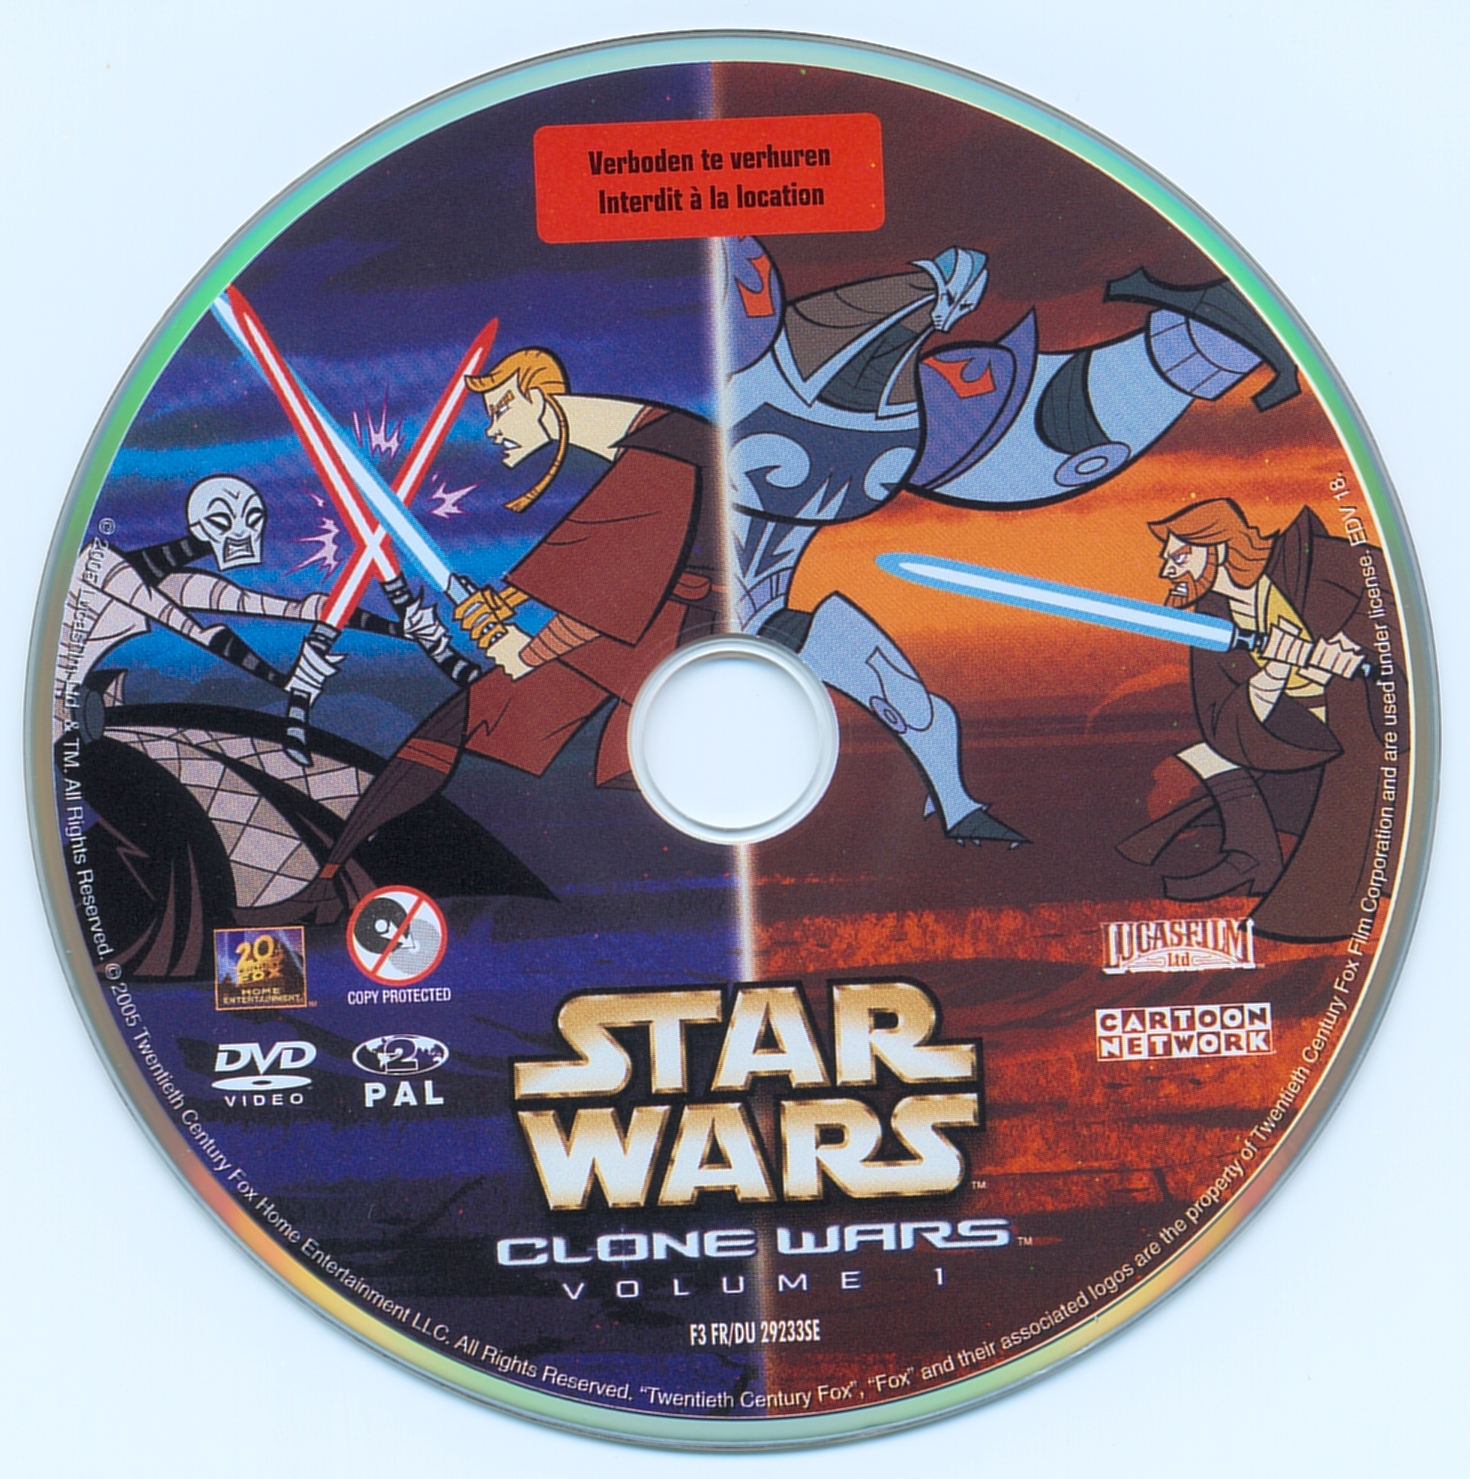 Star Wars Clone Wars vol 1